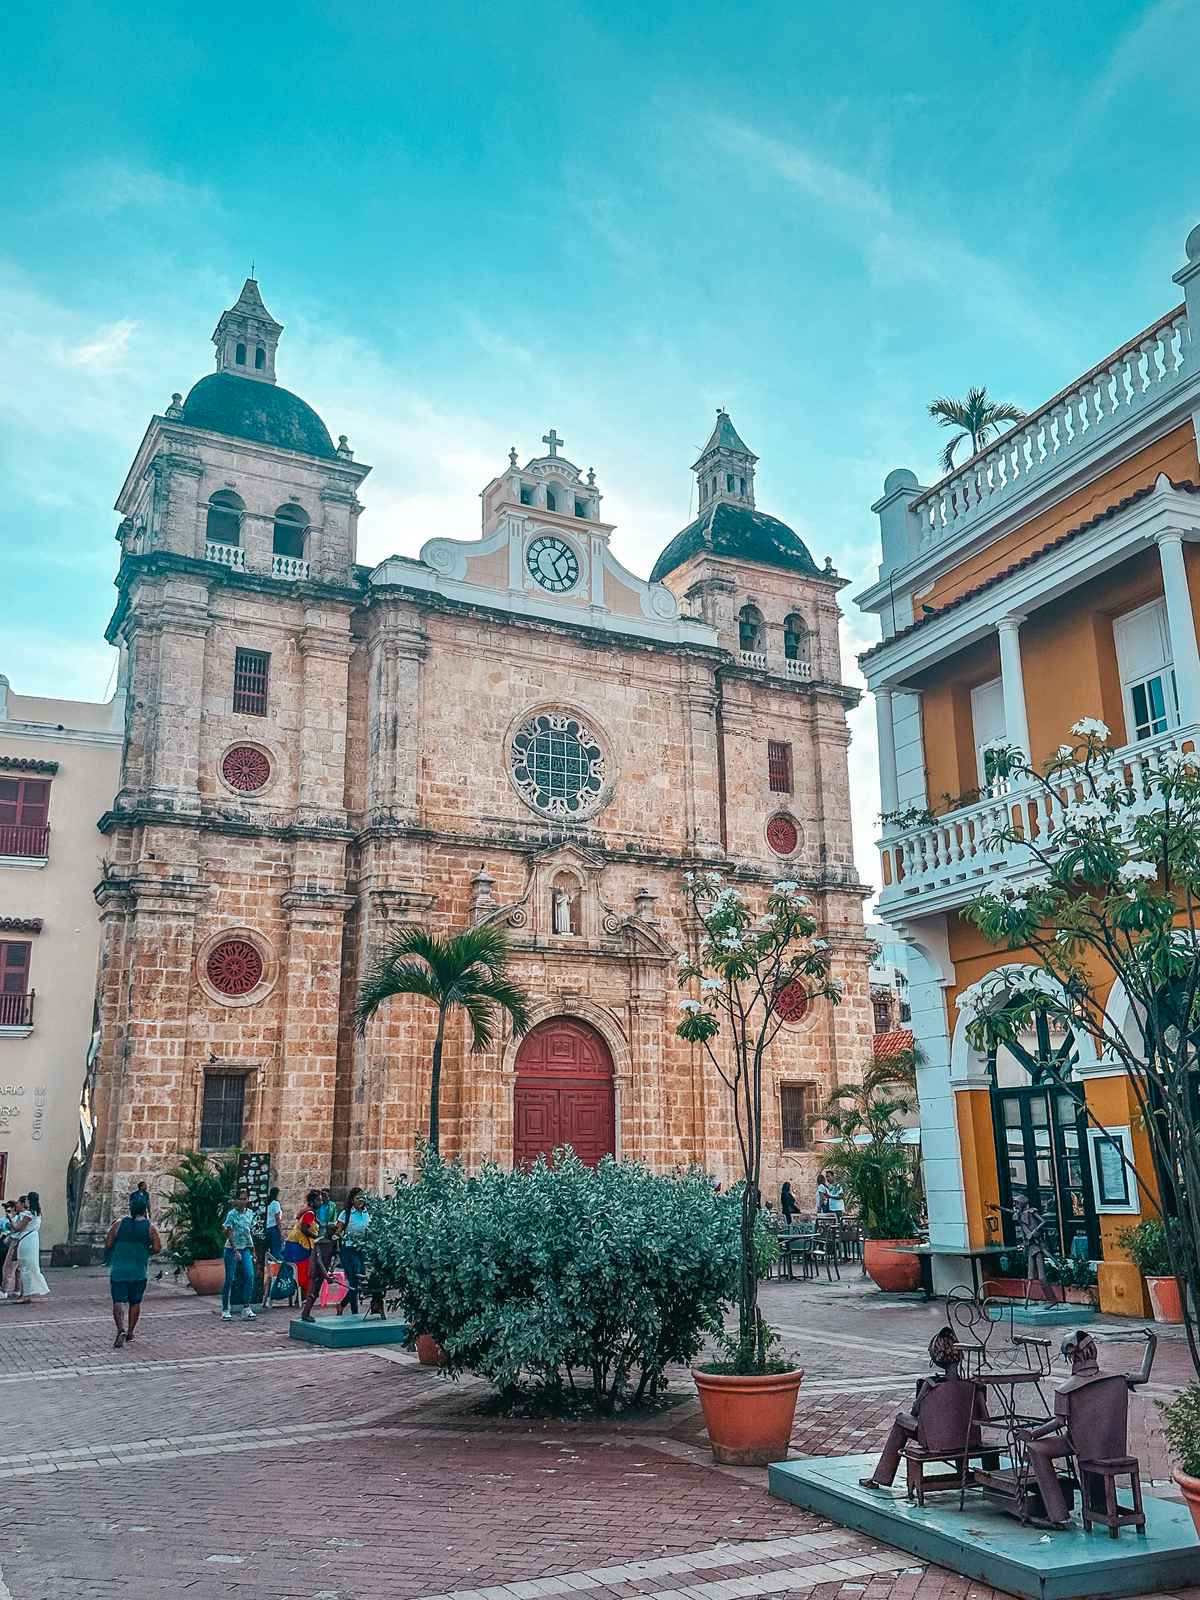 Santuario de San Pedro Claver in Cartagena